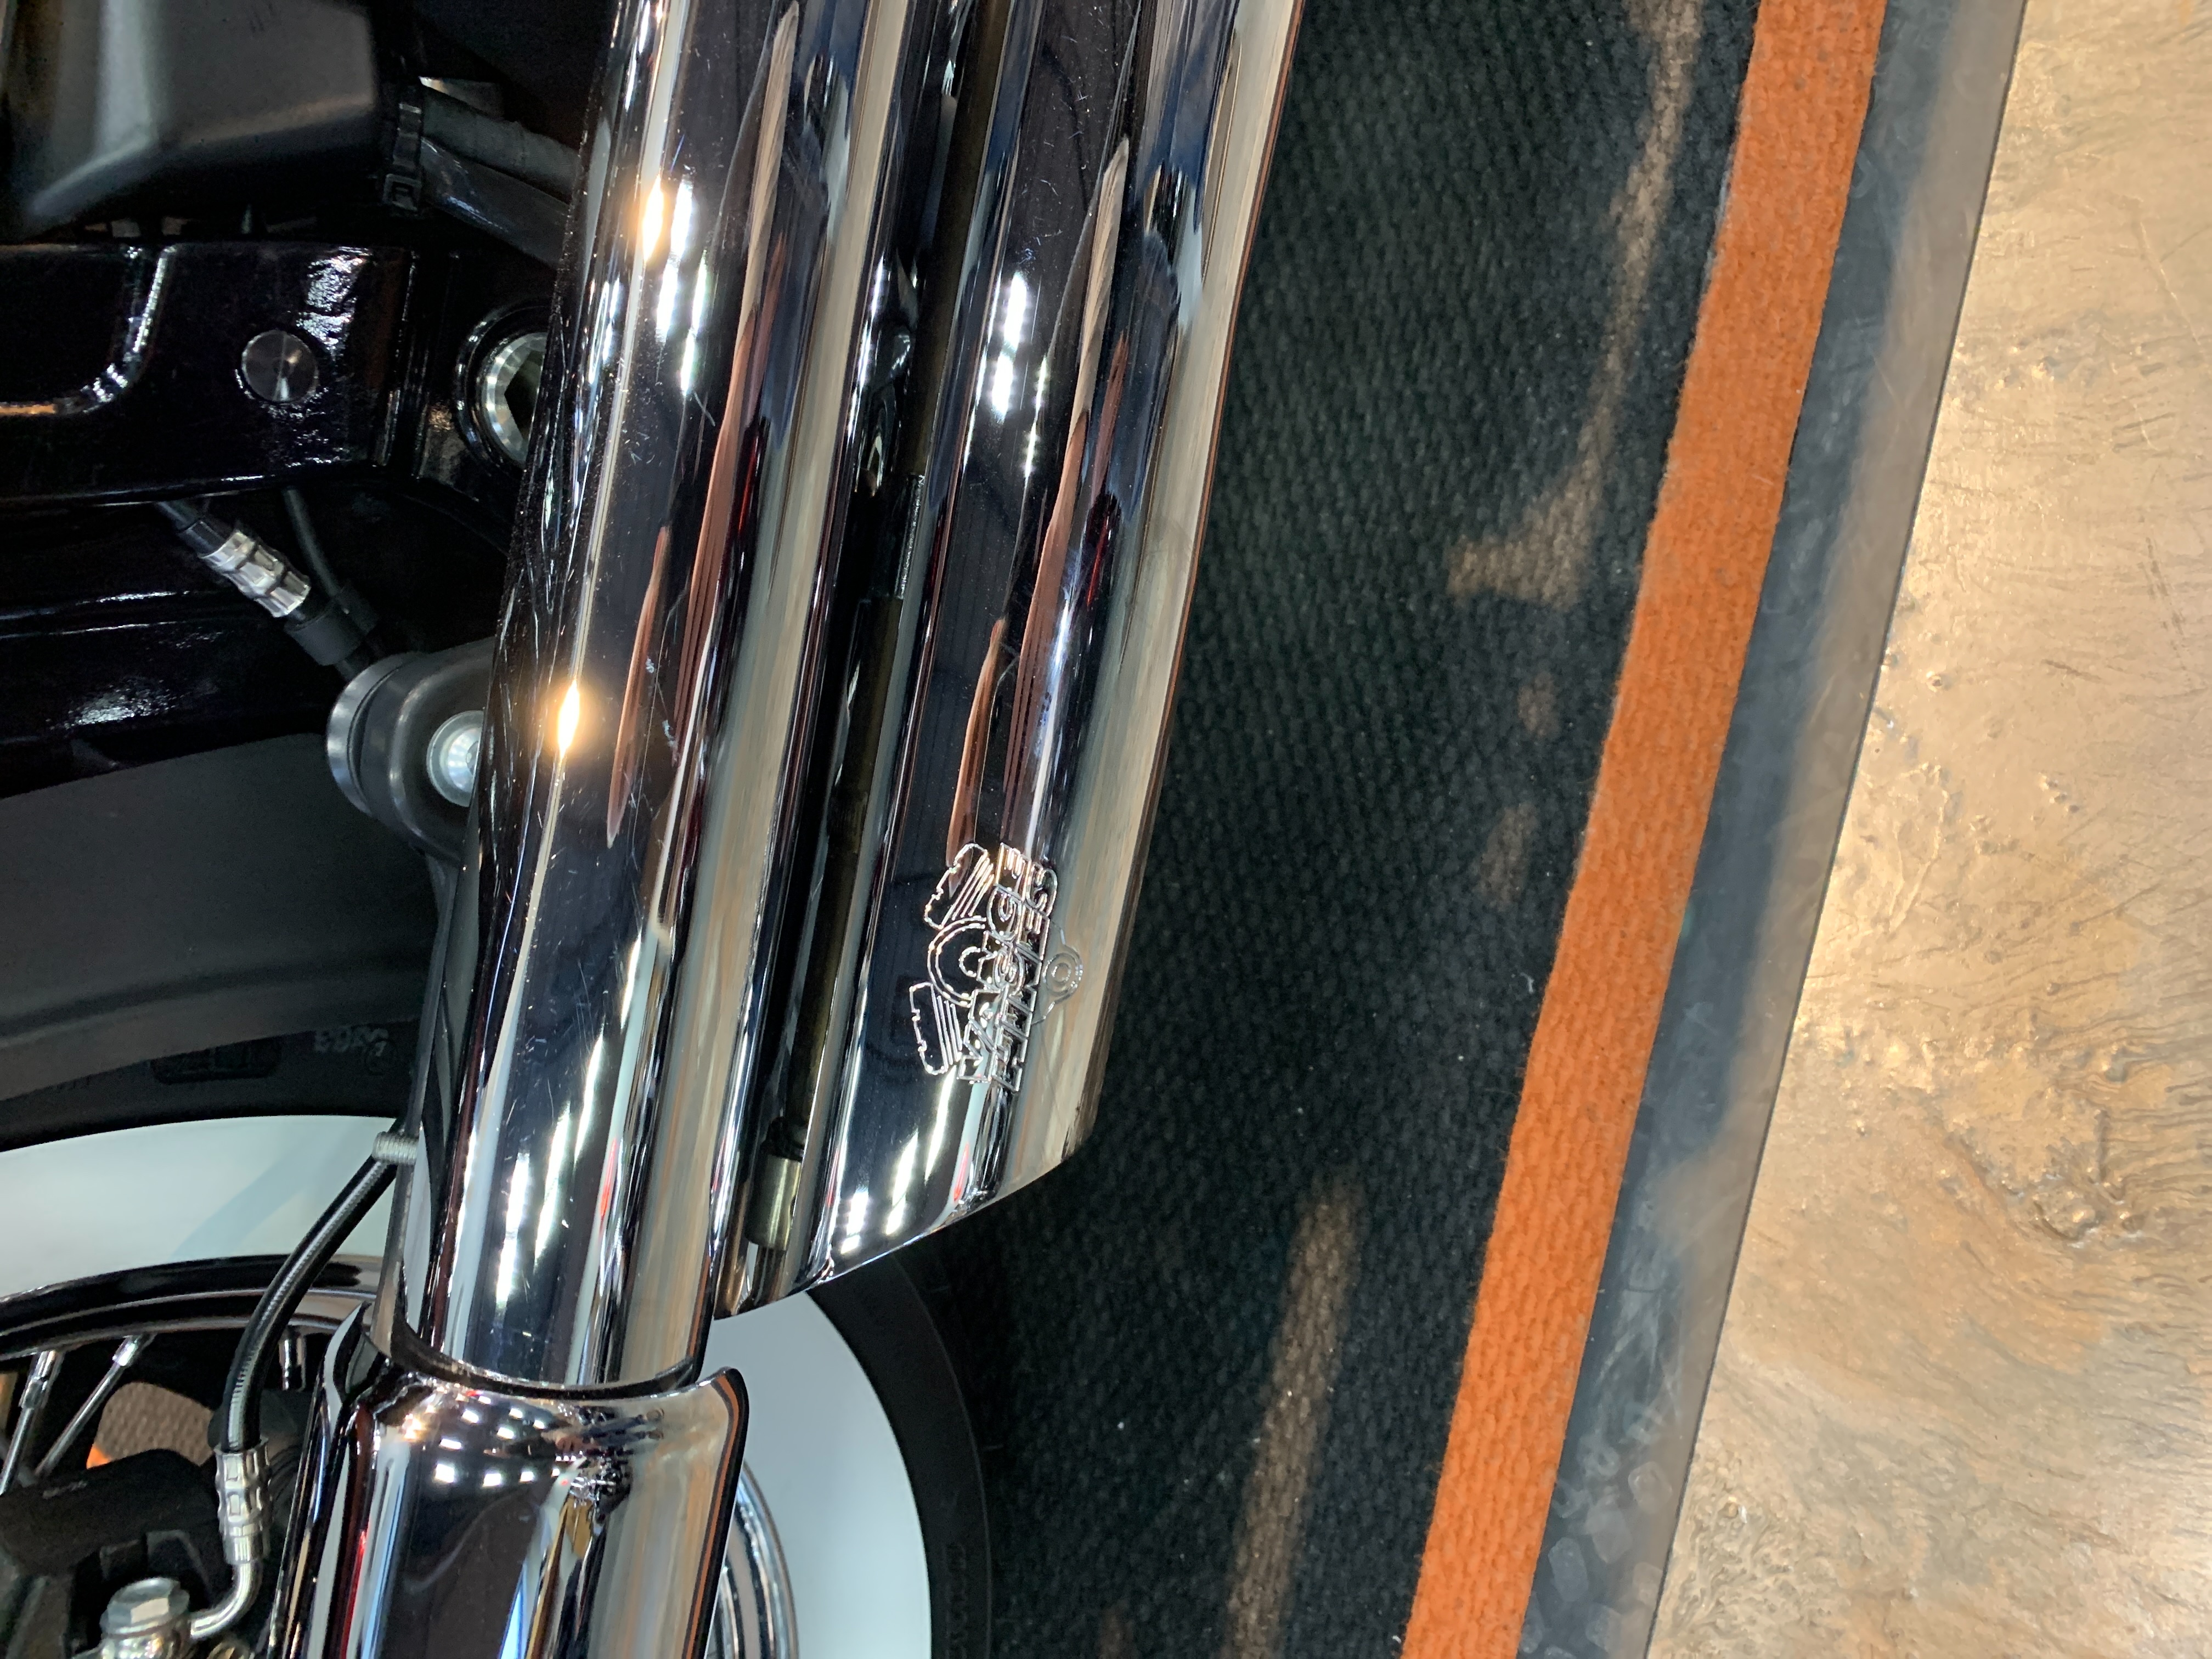 2018 Harley-Davidson Softail Deluxe at Vandervest Harley-Davidson, Green Bay, WI 54303